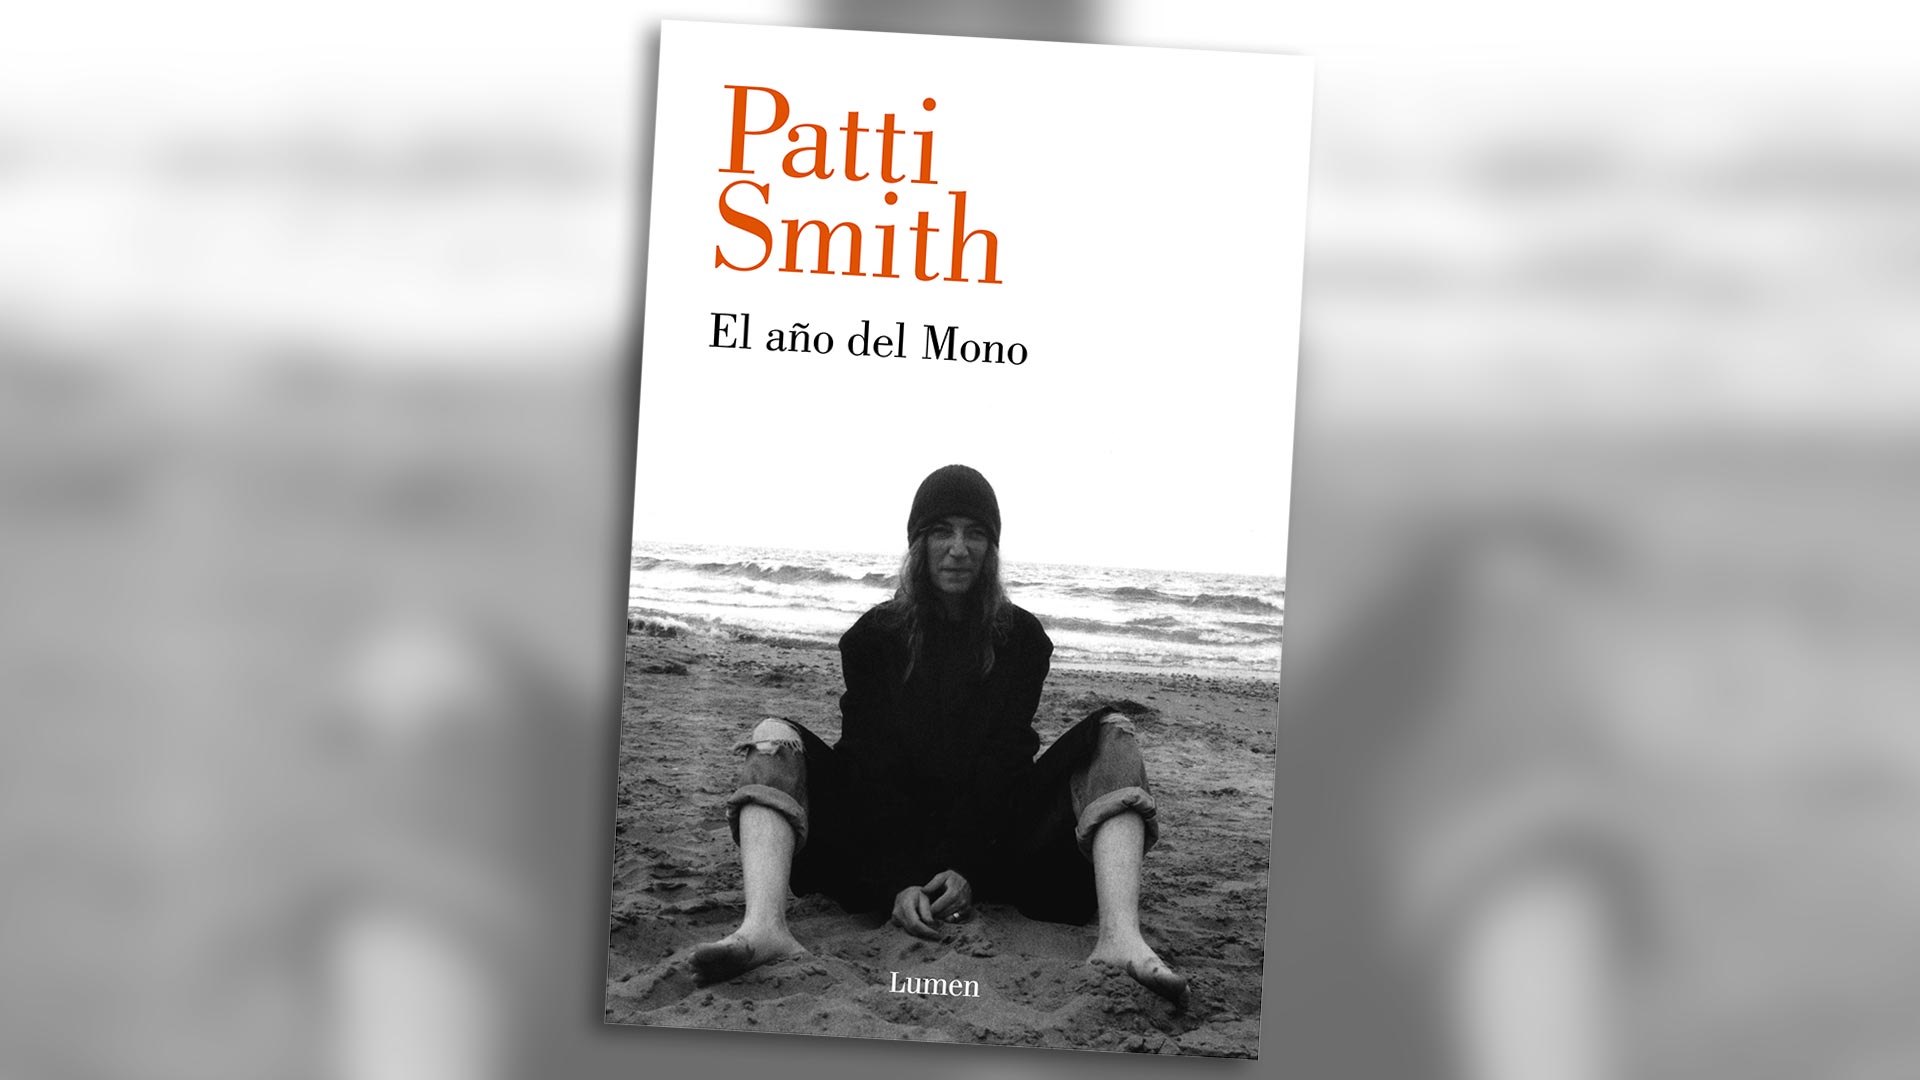 "El año del mono", de Patti Smith (Lumen), llegó a las librerías